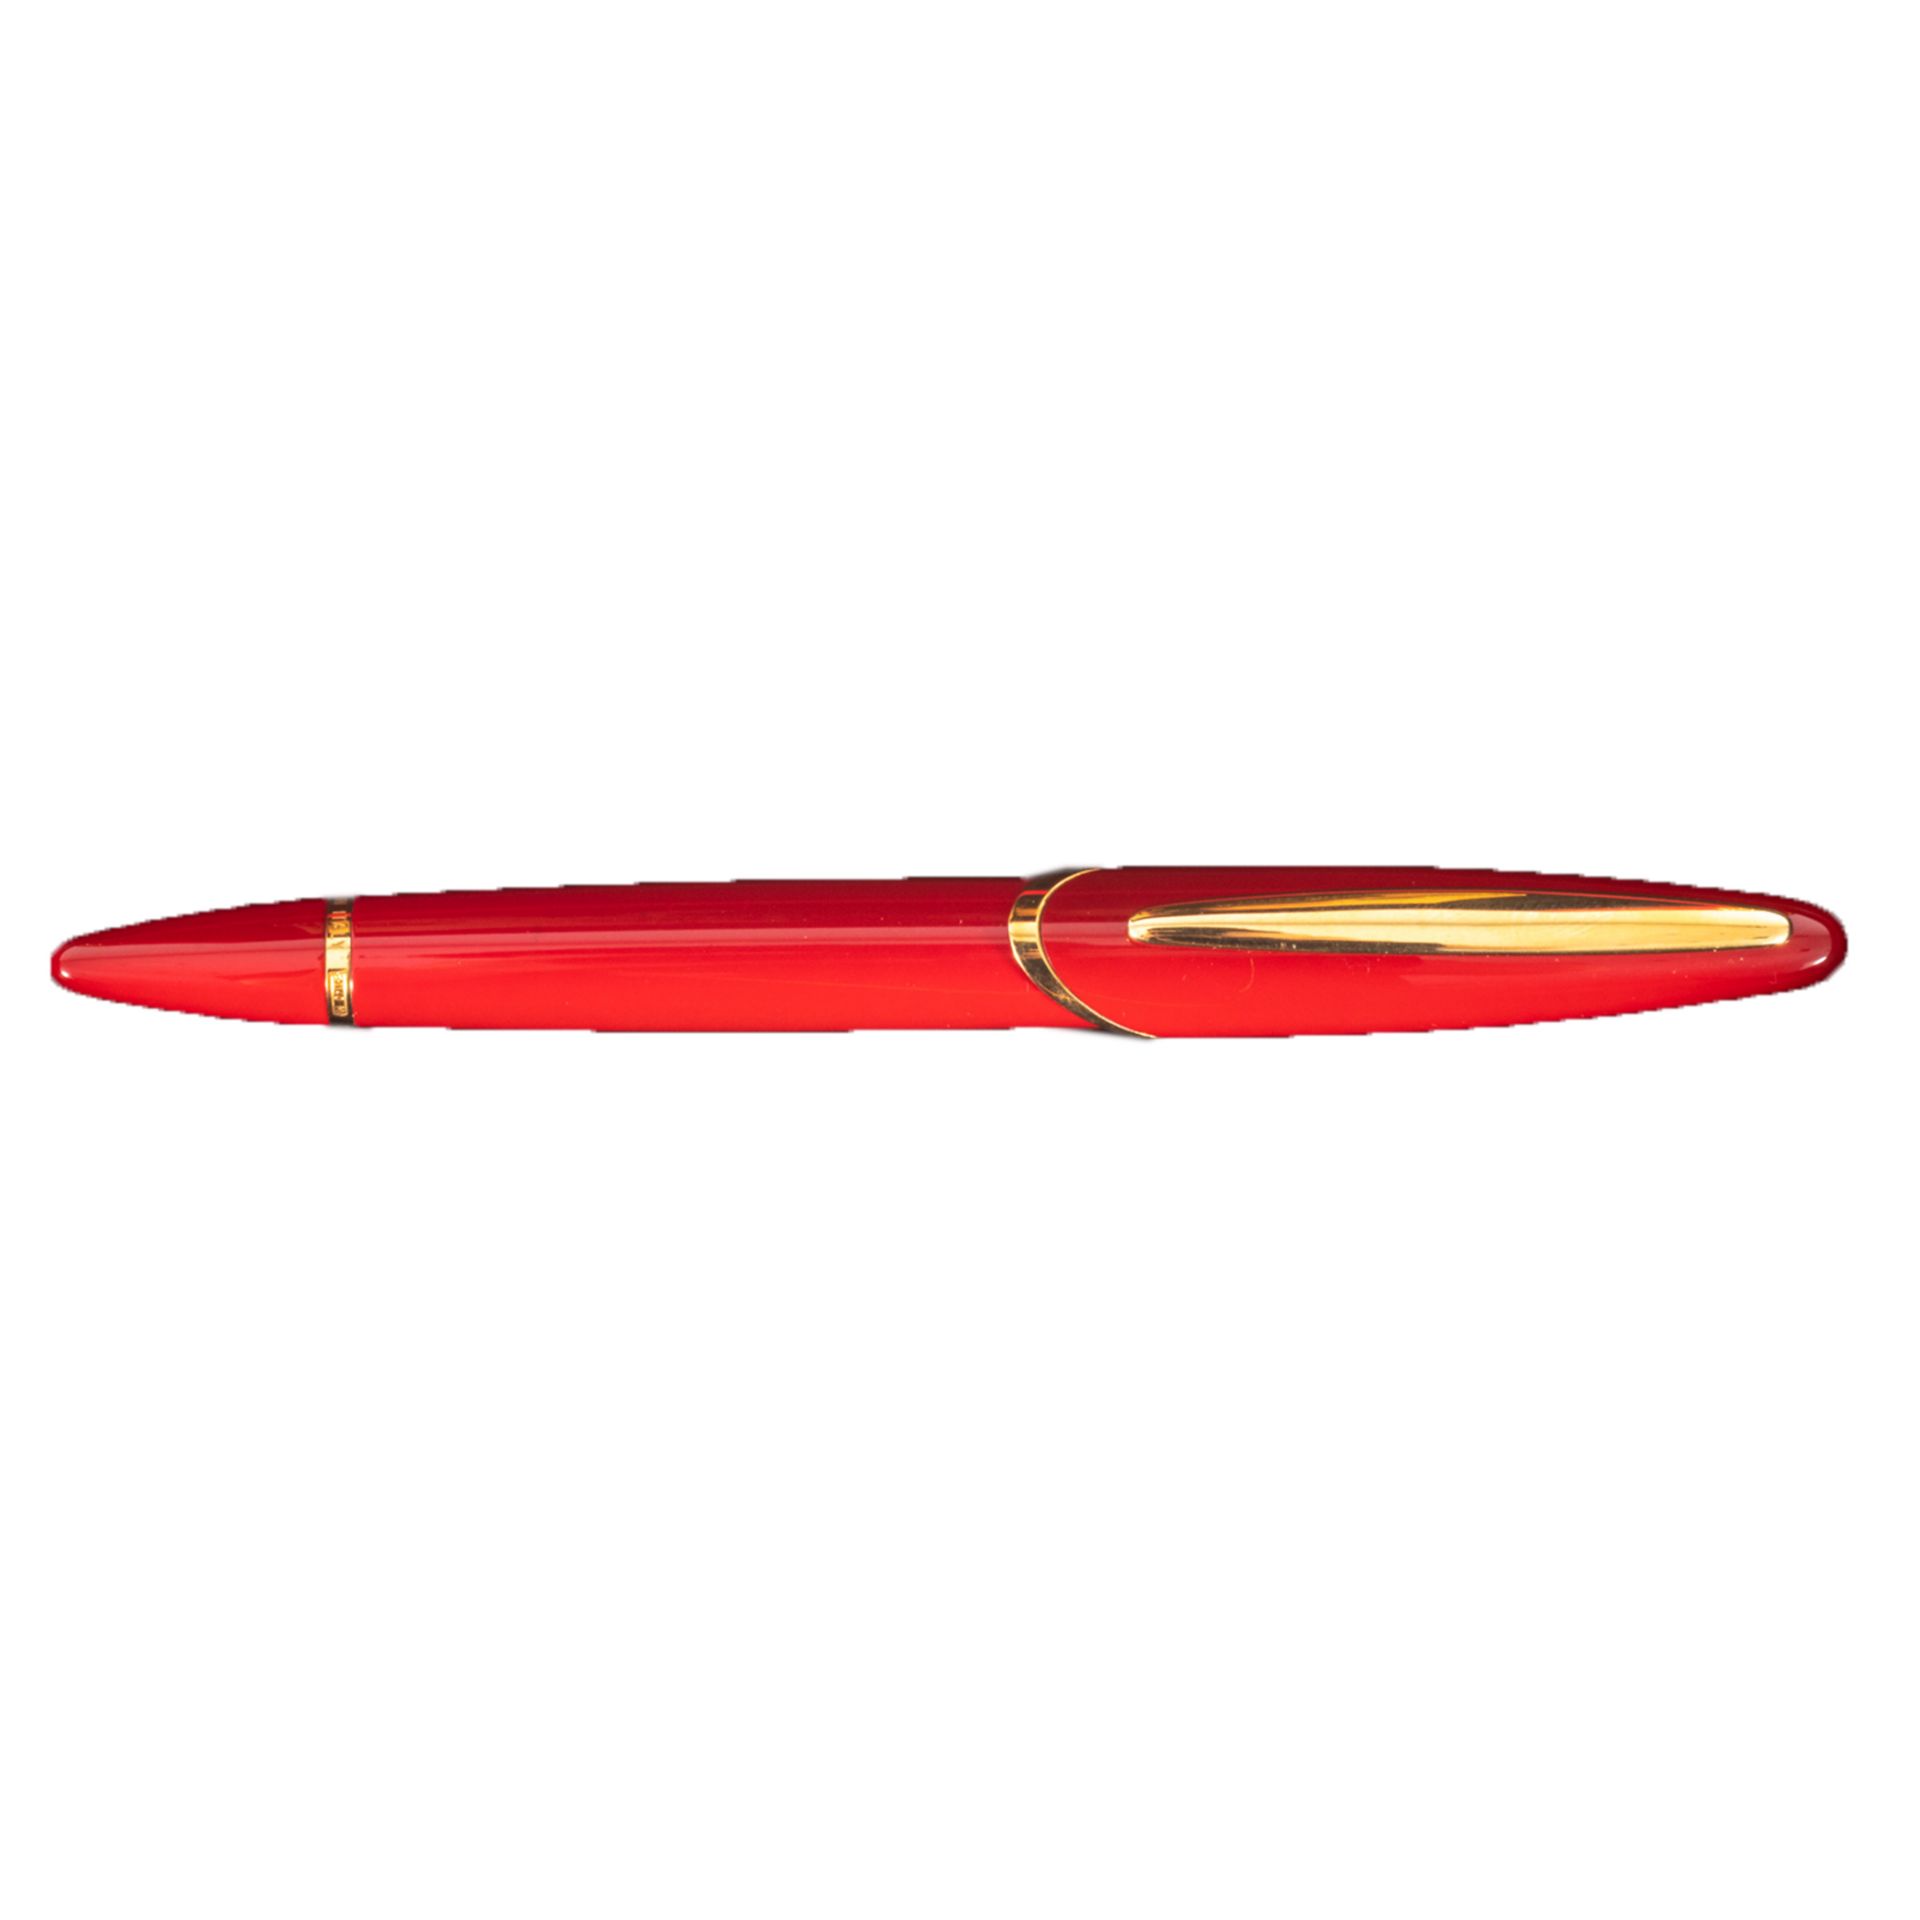 Montegrappa for Ferrari fountain pen.